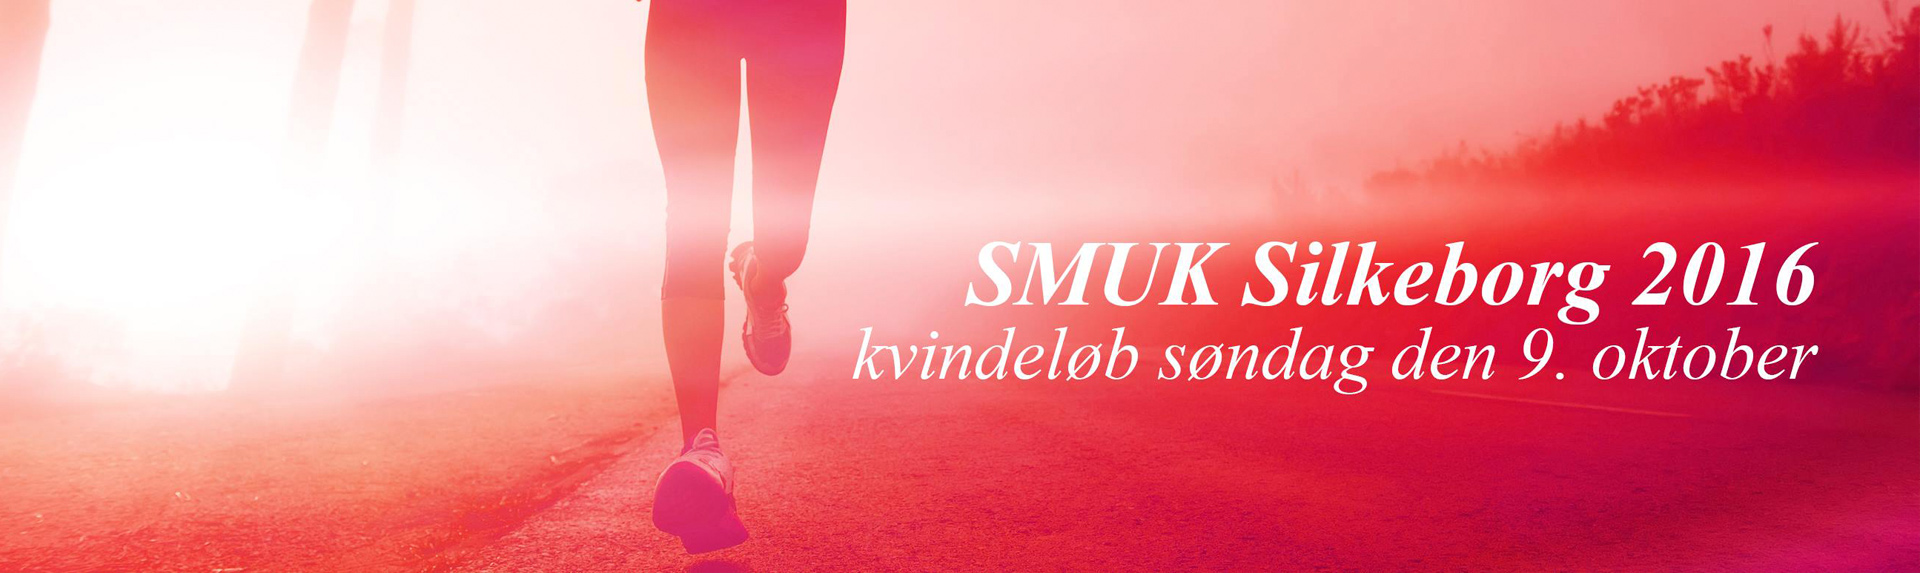 SMUK Silkeborg 2016